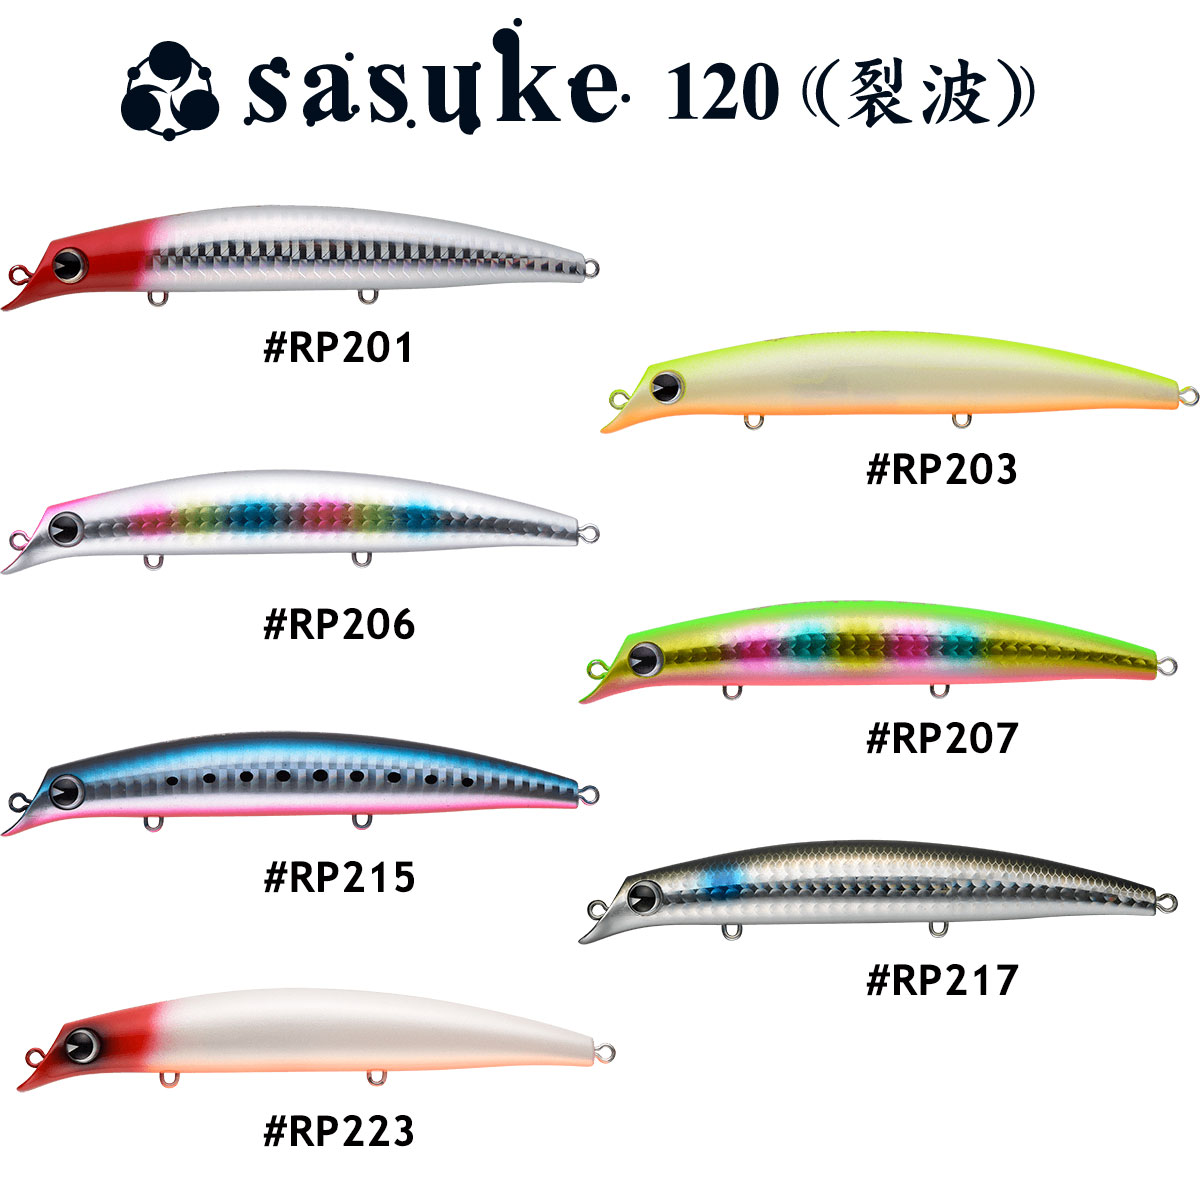 IMA Sasuke 120 Suni Balık, 12cm Uzunluğunda 17gr Ağırlığında, Owner 6 Numara İğne, Levrek, Kofana ve Baraküda Avlarında Yüksek Performanslı Suni Balık